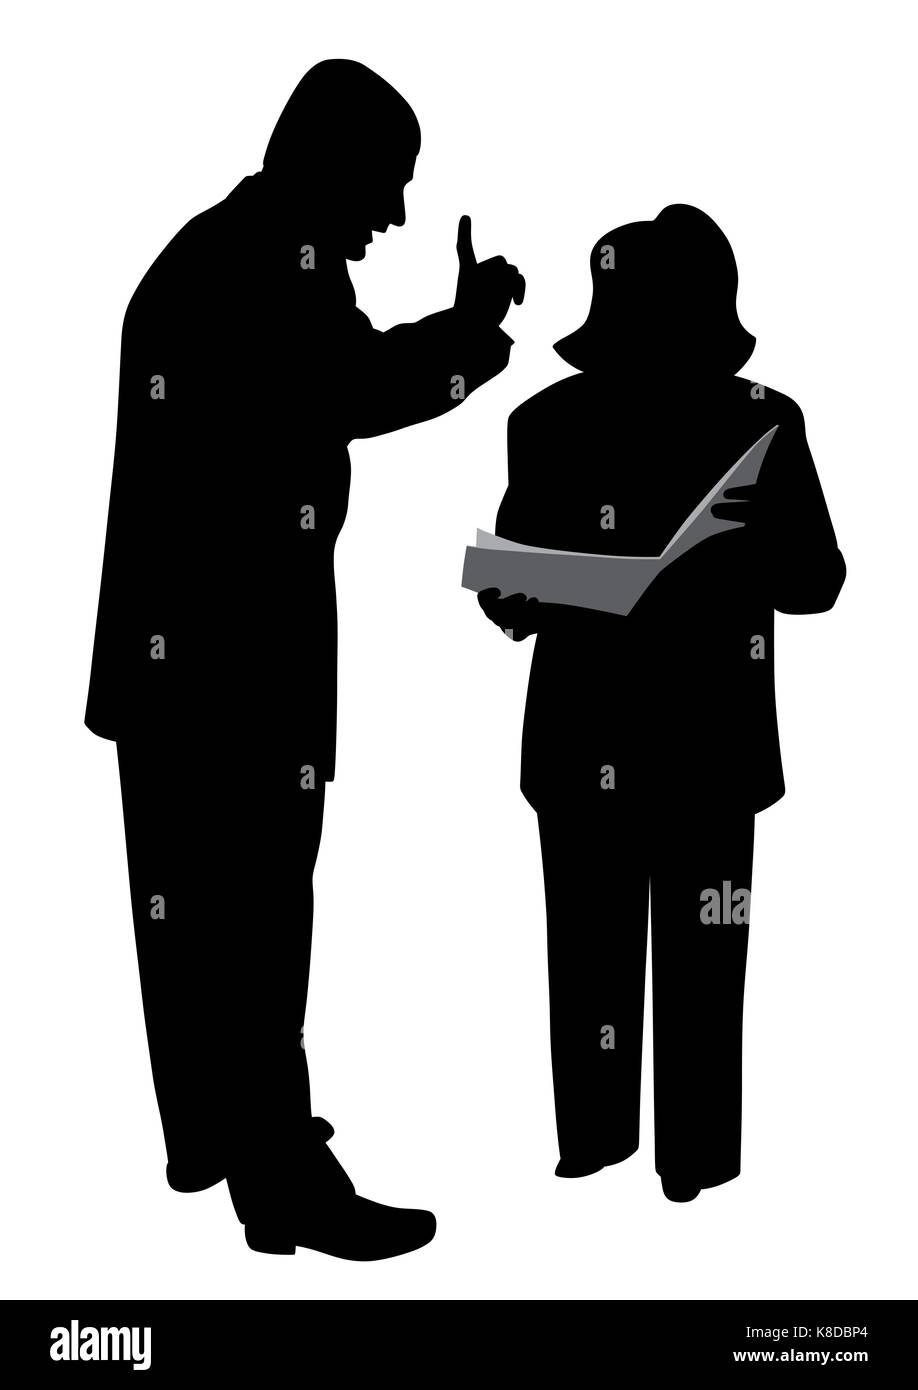 Il boss maschio conferendo ordine istruzioni o avvertimento sua dipendente di sesso femminile Illustrazione Vettoriale